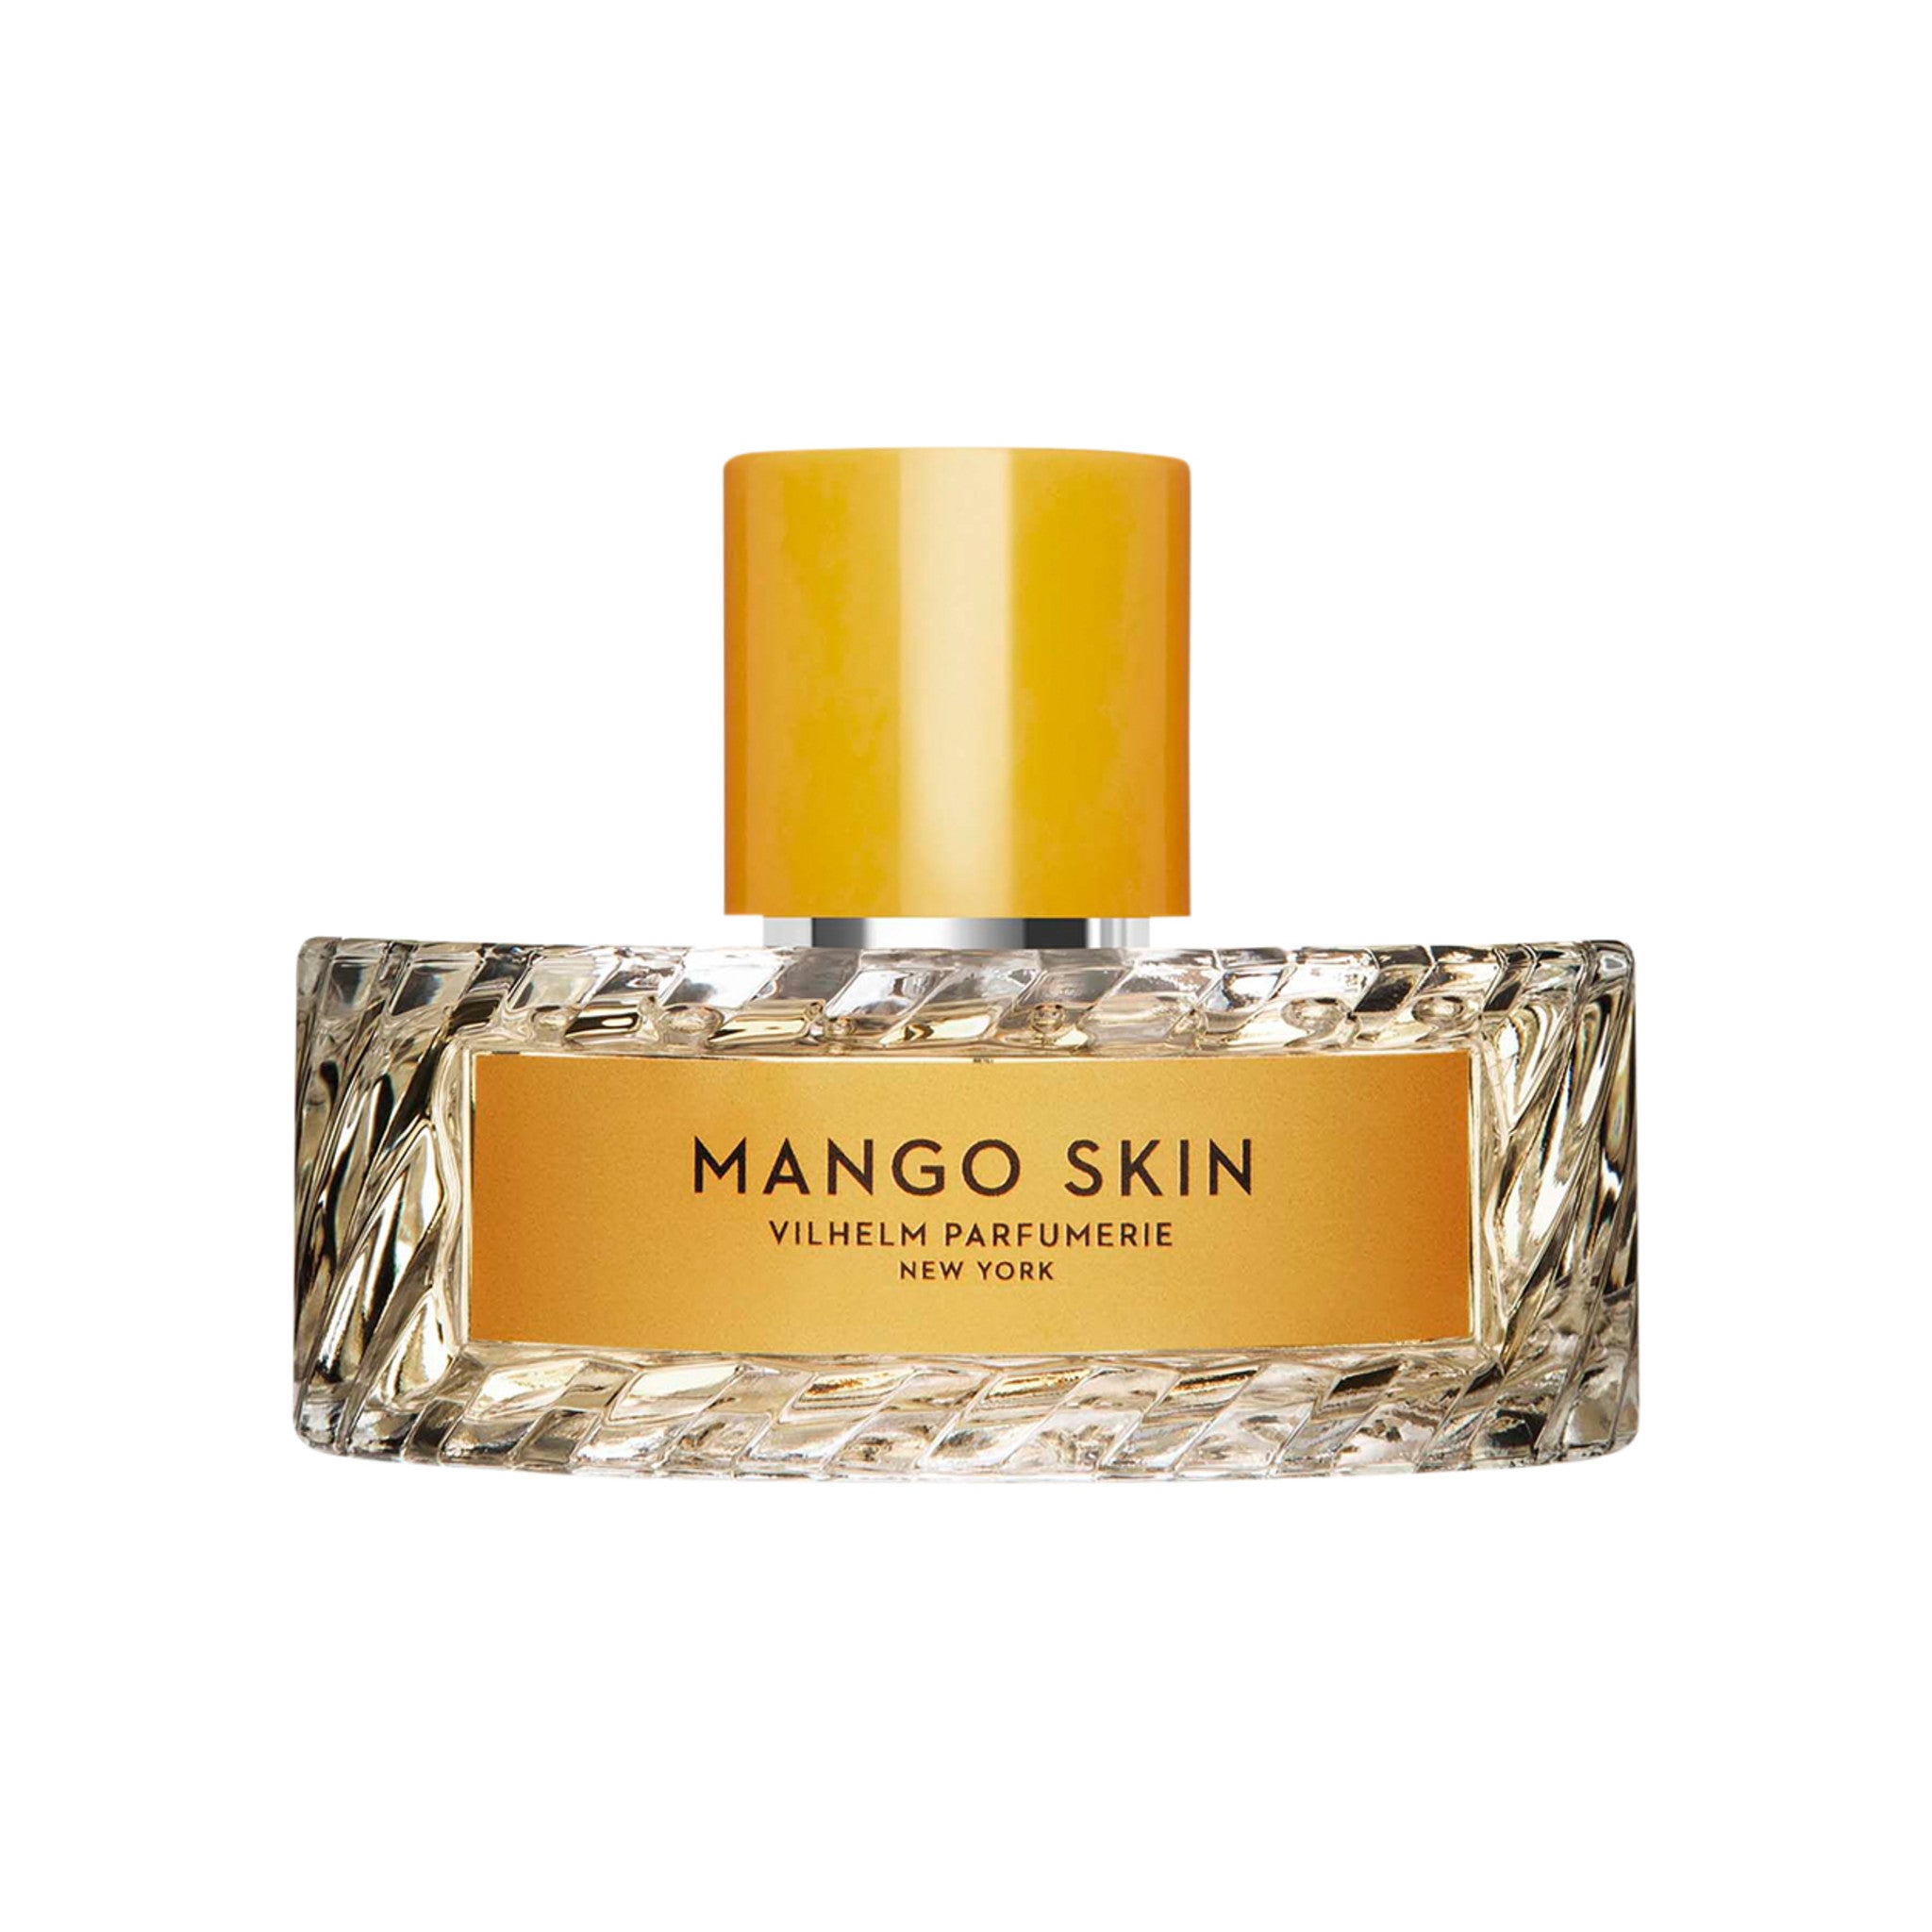 Vilhelm Parfumerie Mango Skin Eau de Parfum Size variant: 100 ml main image.